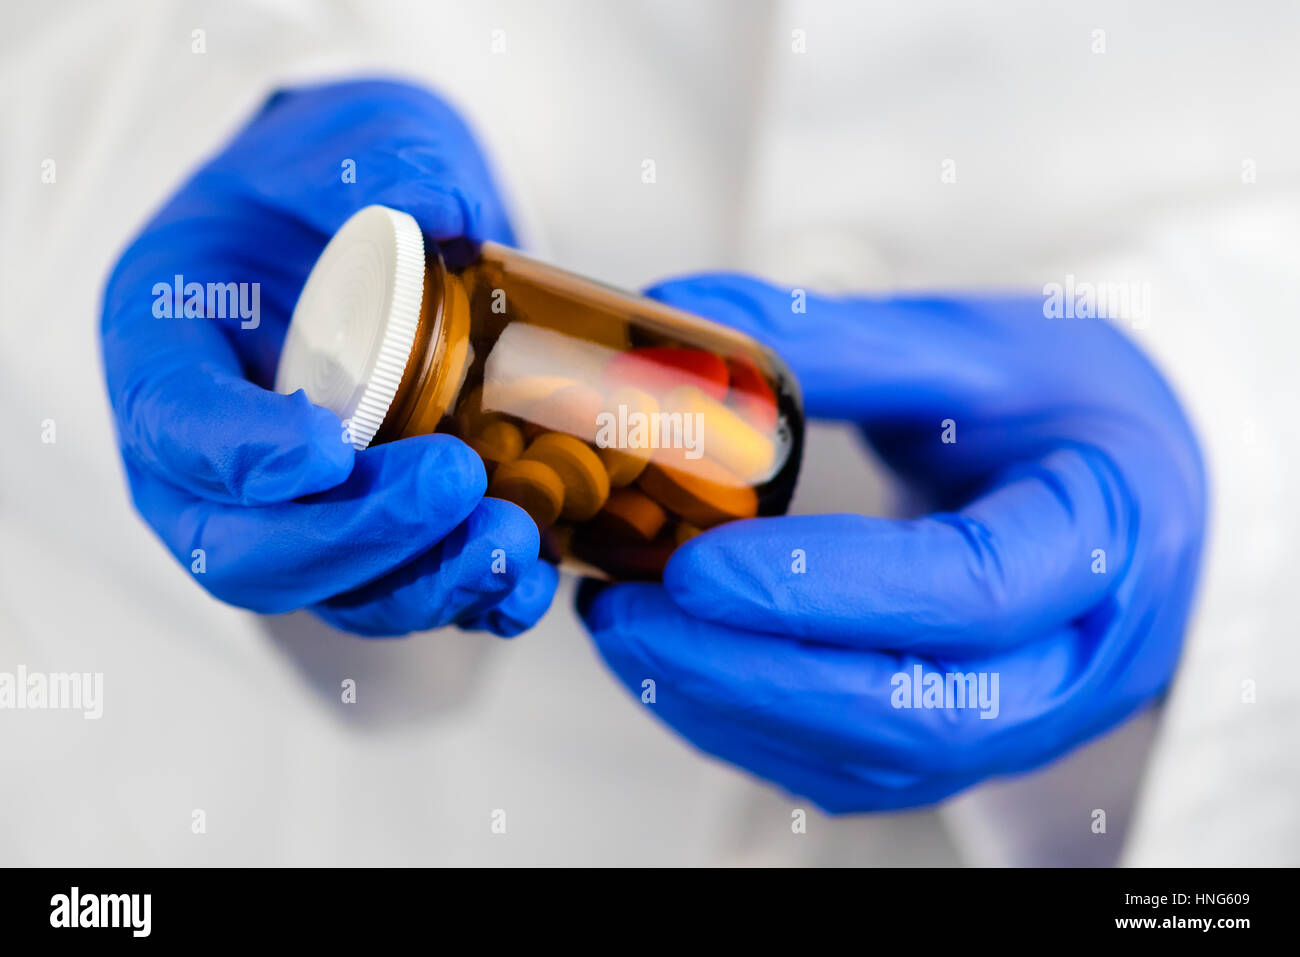 Female doctor holding bouteille sans étiquette de différentes pilules et médicaments, médicaments sur ordonnance et les soins de santé, selective focus Banque D'Images